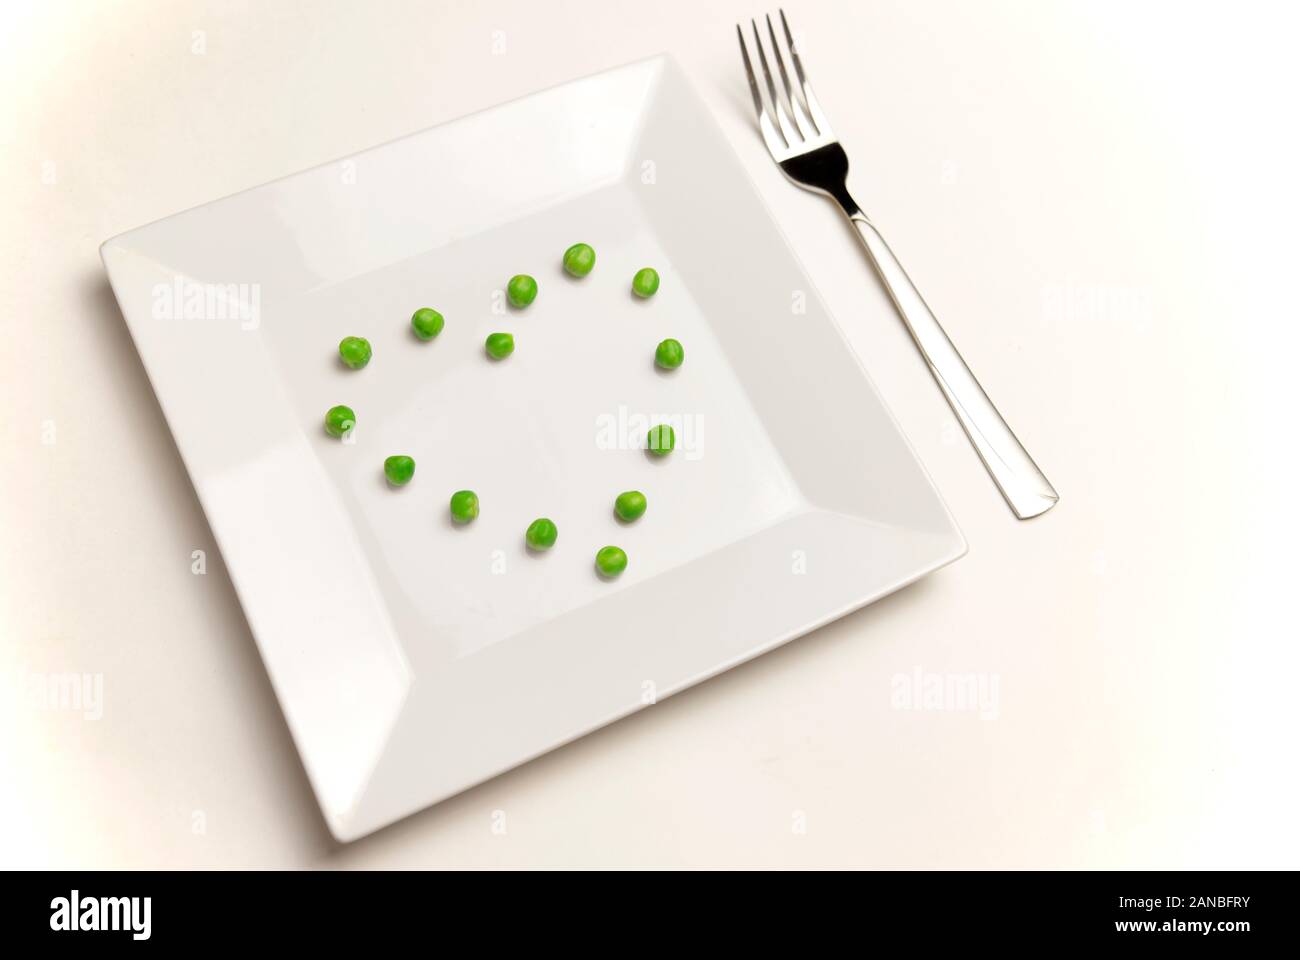 Gesunde Ernährung, Diäten, vegetarisches Essen und Personen Konzept mit Gabel Erbsen essen in Form von Herzen. Stockfoto